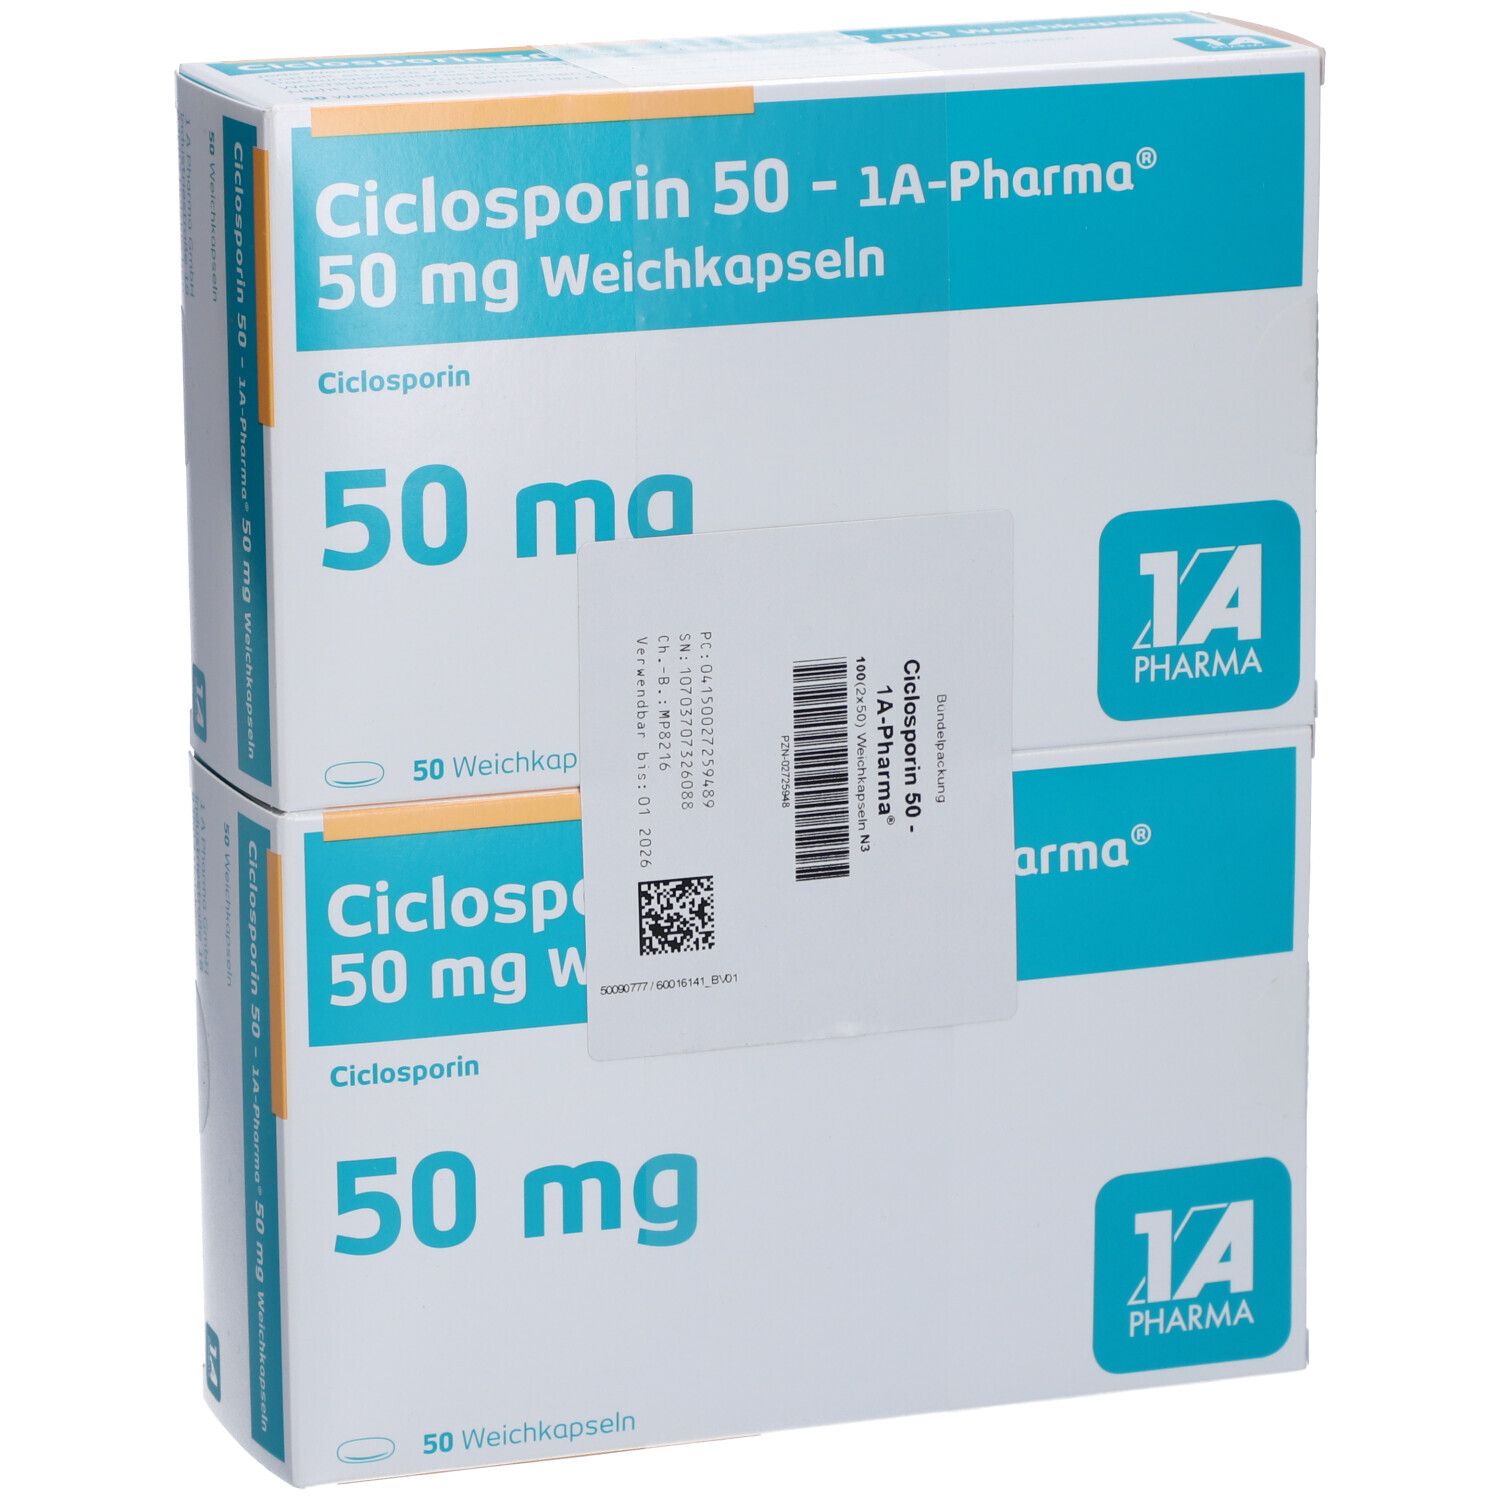 Ciclosporin 50 1A Pharma®